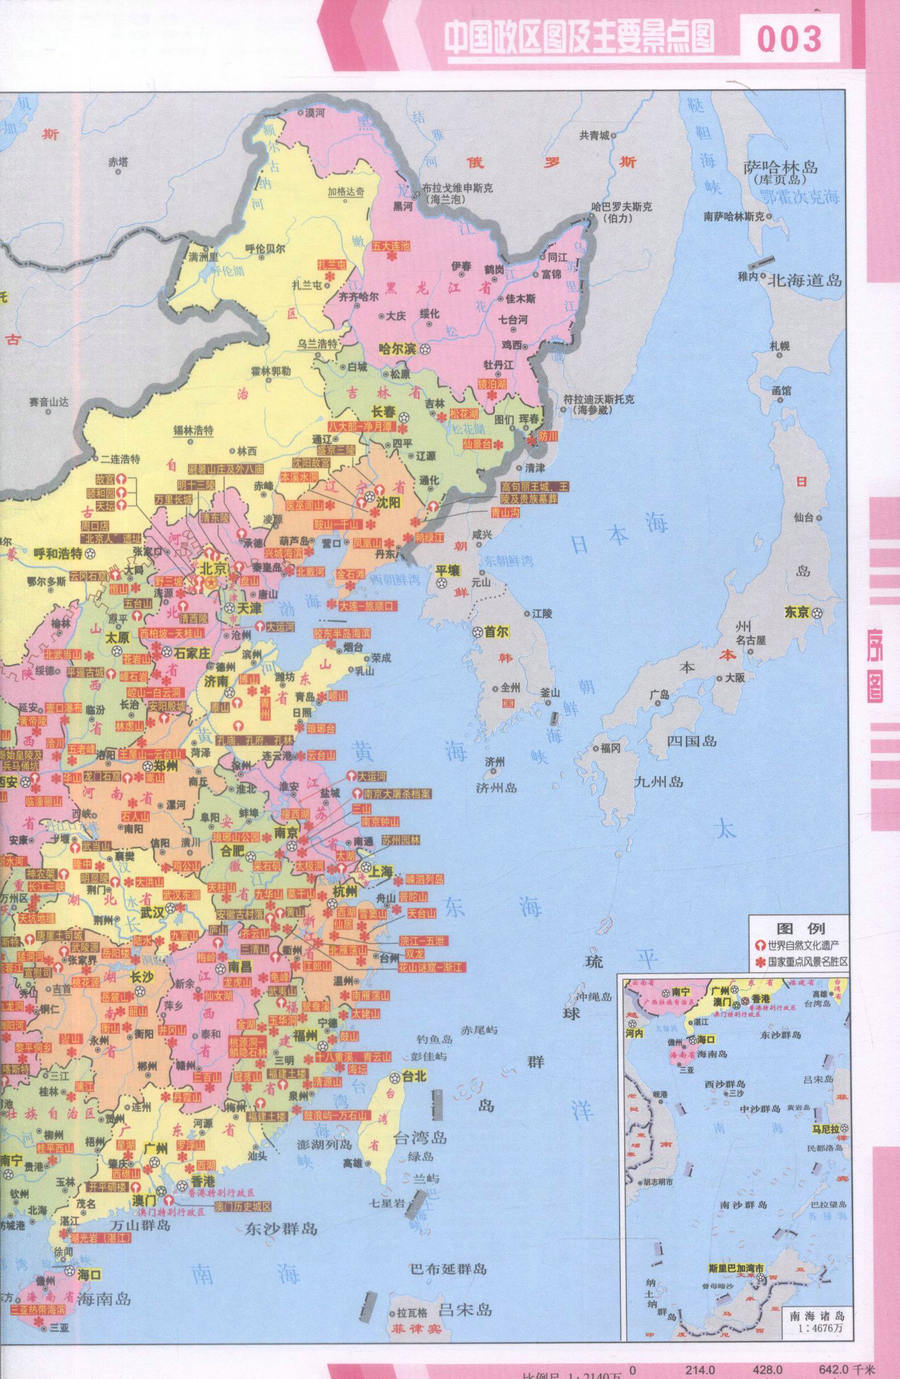 正版现货 中国交通旅游地图册(第二版 2017版) 中国交通旅游地图 交通